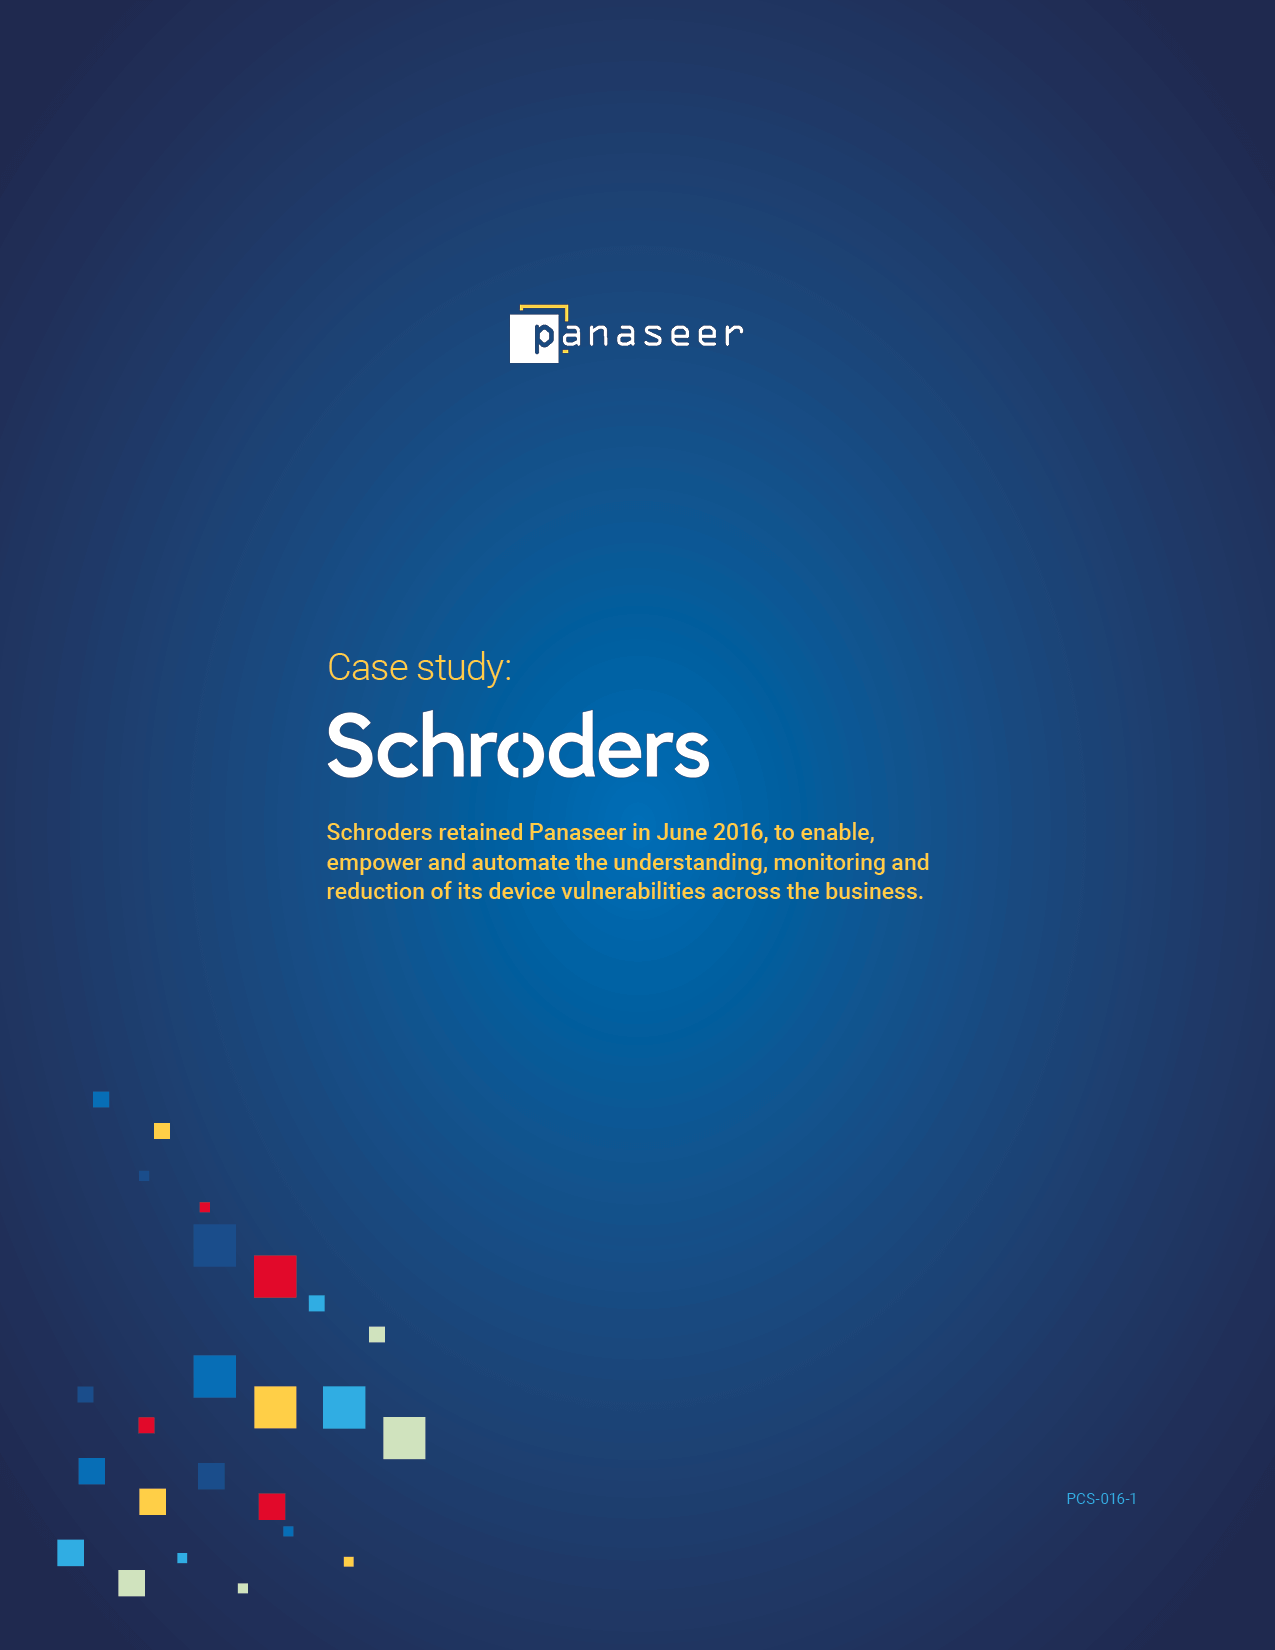 Schroders: Understanding, monitoring and reducing security vulnerabilities